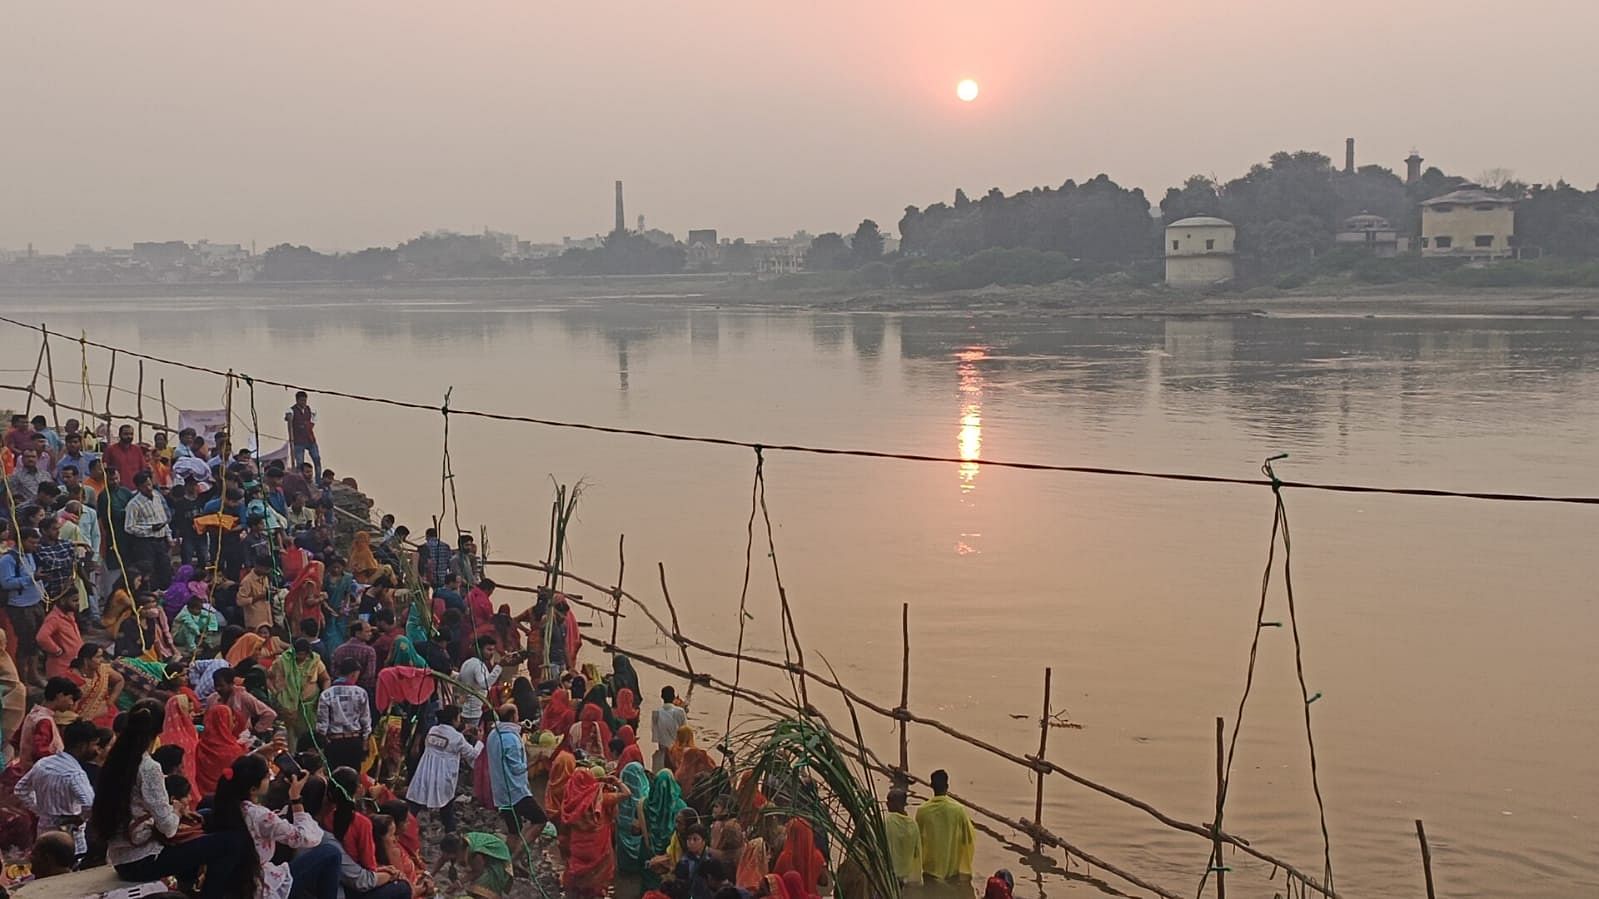 Chhath Puja 2022 Photo: डूबते सूर्य को दिया अर्घ्य, गोमती घाट पर उमड़ा छठ व्रतियों का हुजूम, देखें फोटो